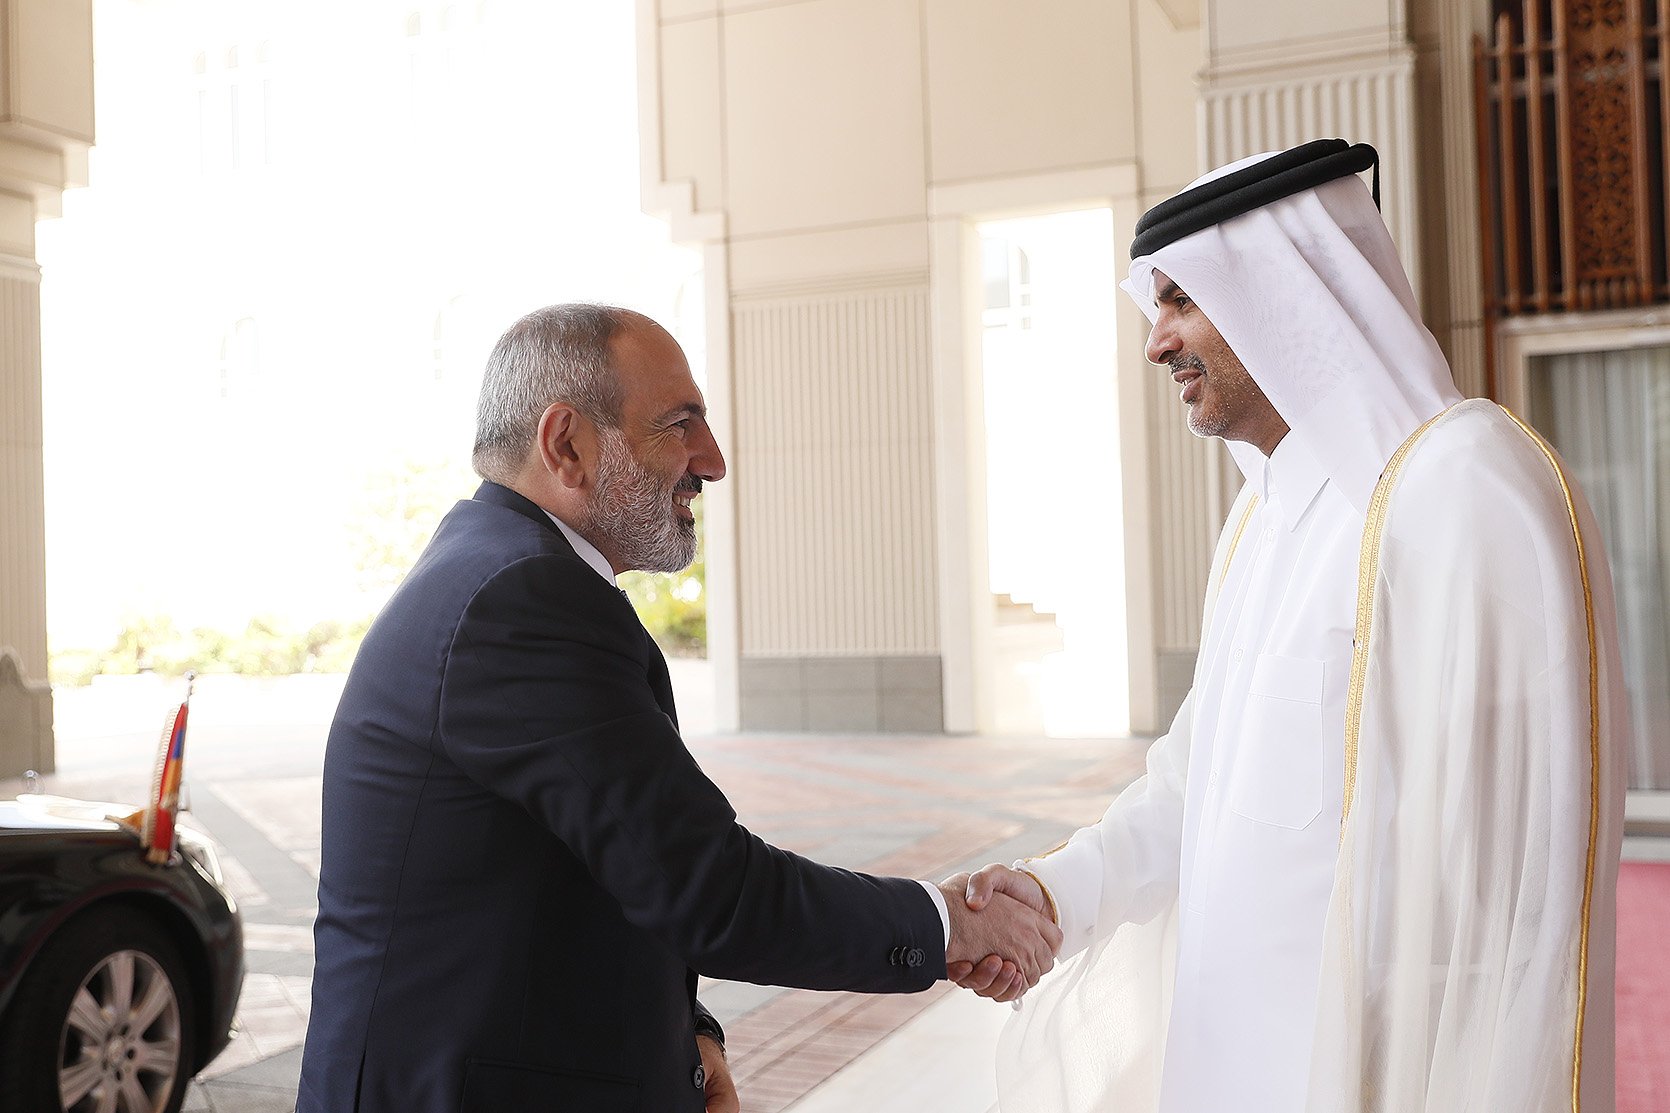 Վարչապետը հանդիպեց Կատարի էմիրի և վարչապետի հետ, ստորագրվեցին մի շարք պայմանագրեր